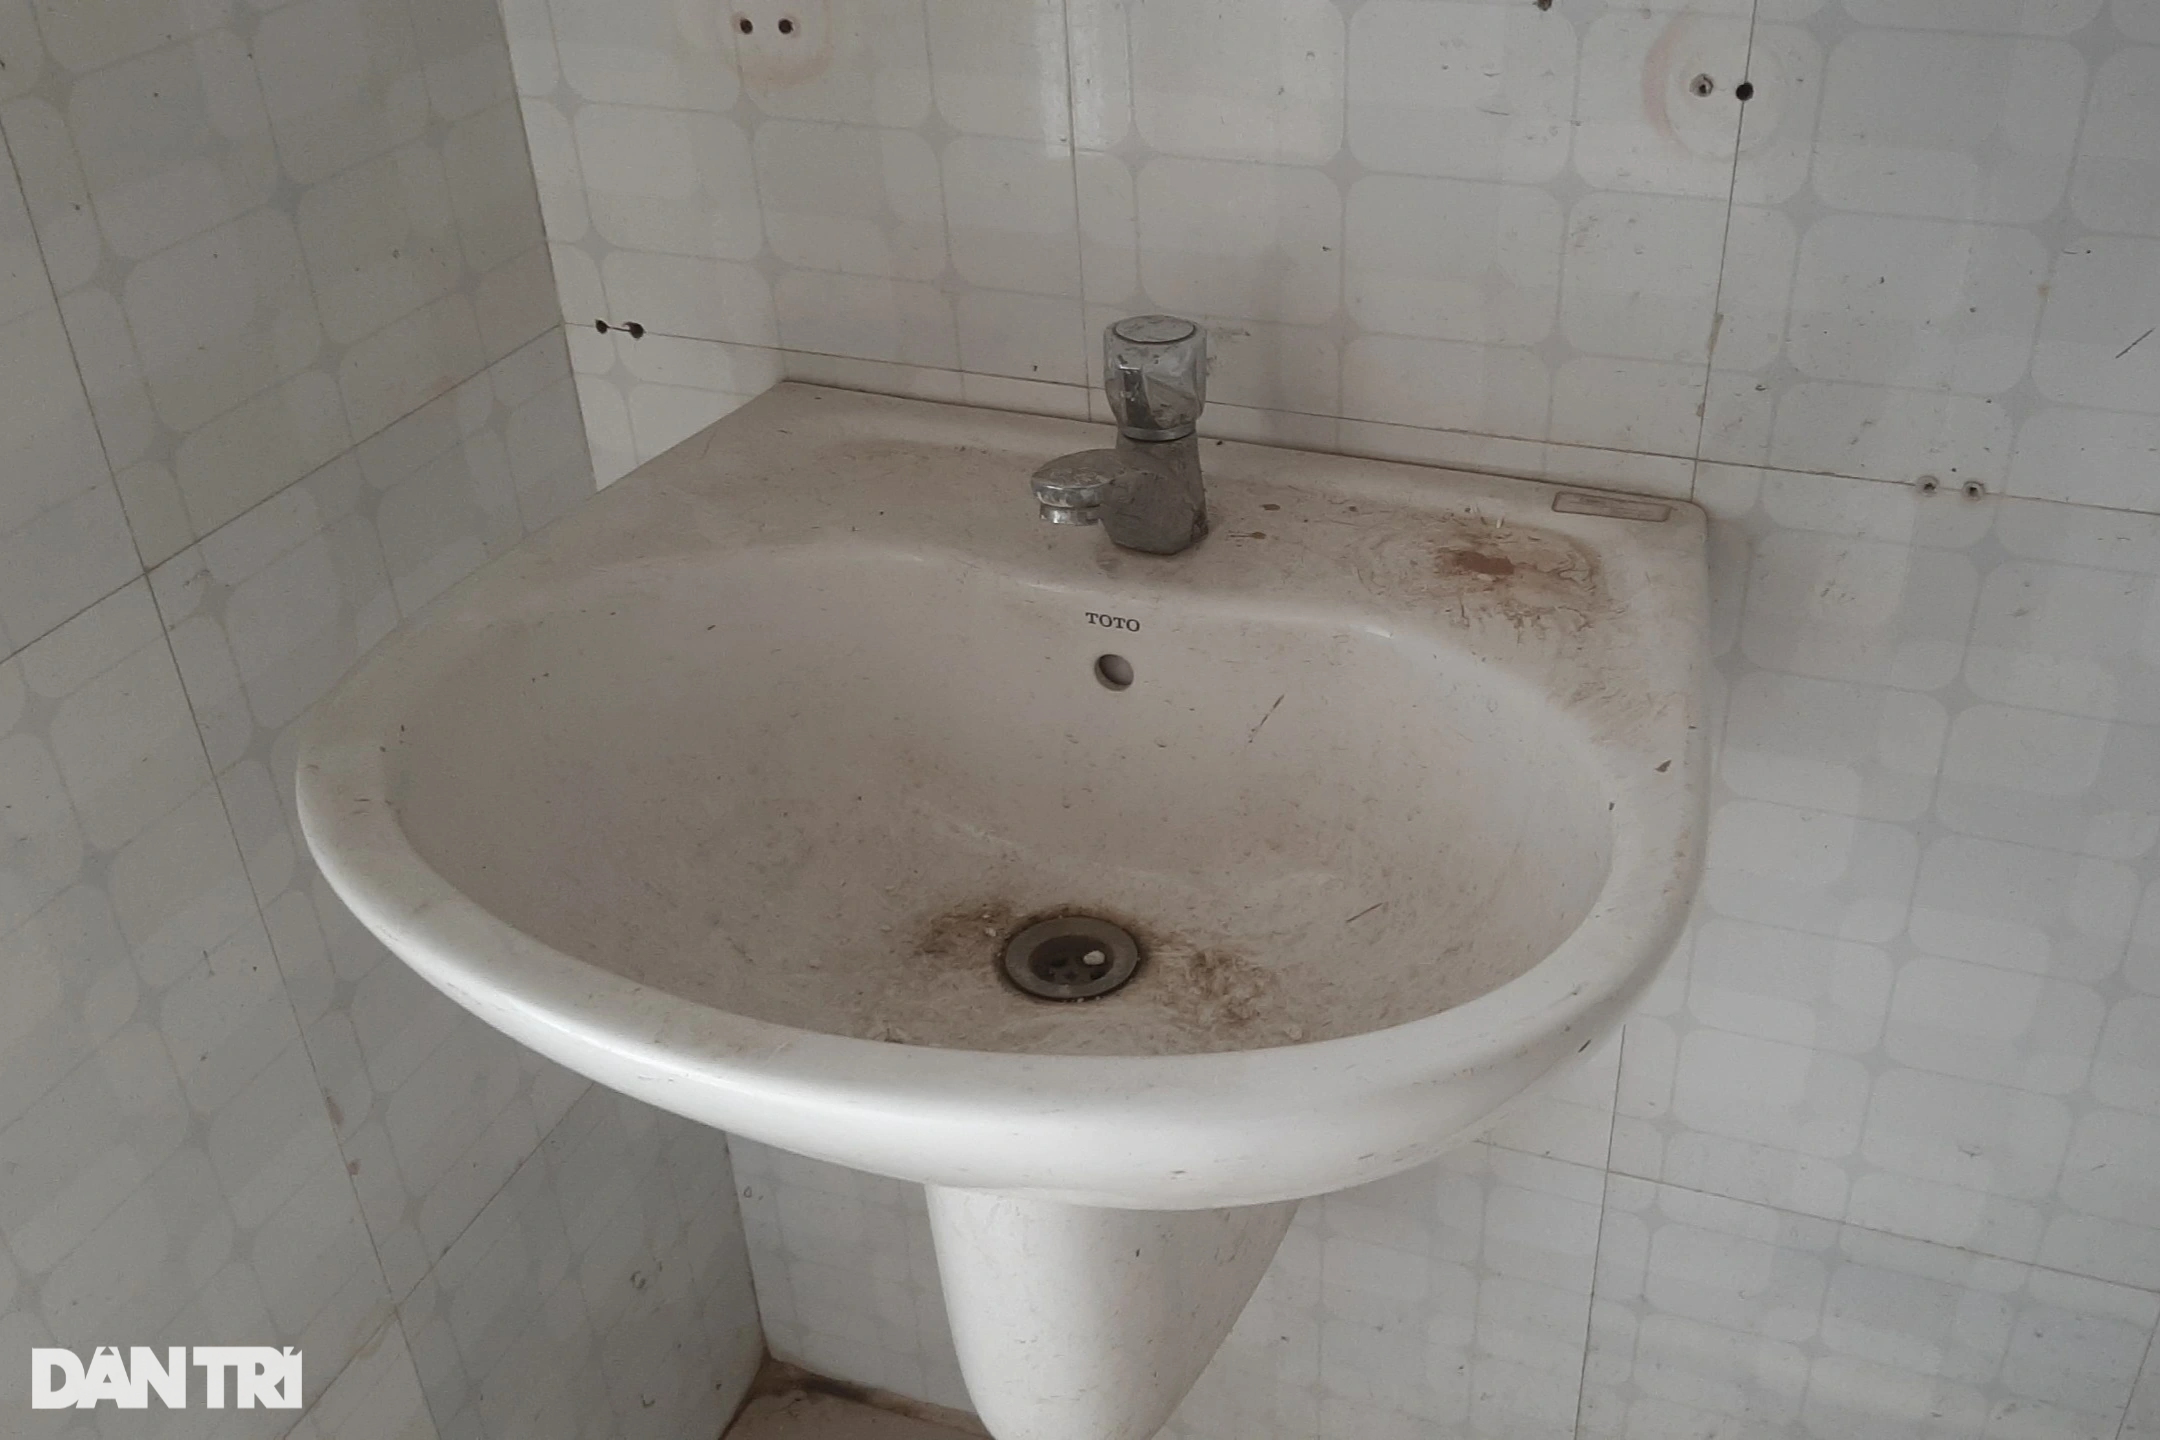 Cảnh nhếch nhác, hoang tàn trong nhà vệ sinh công cộng - 5